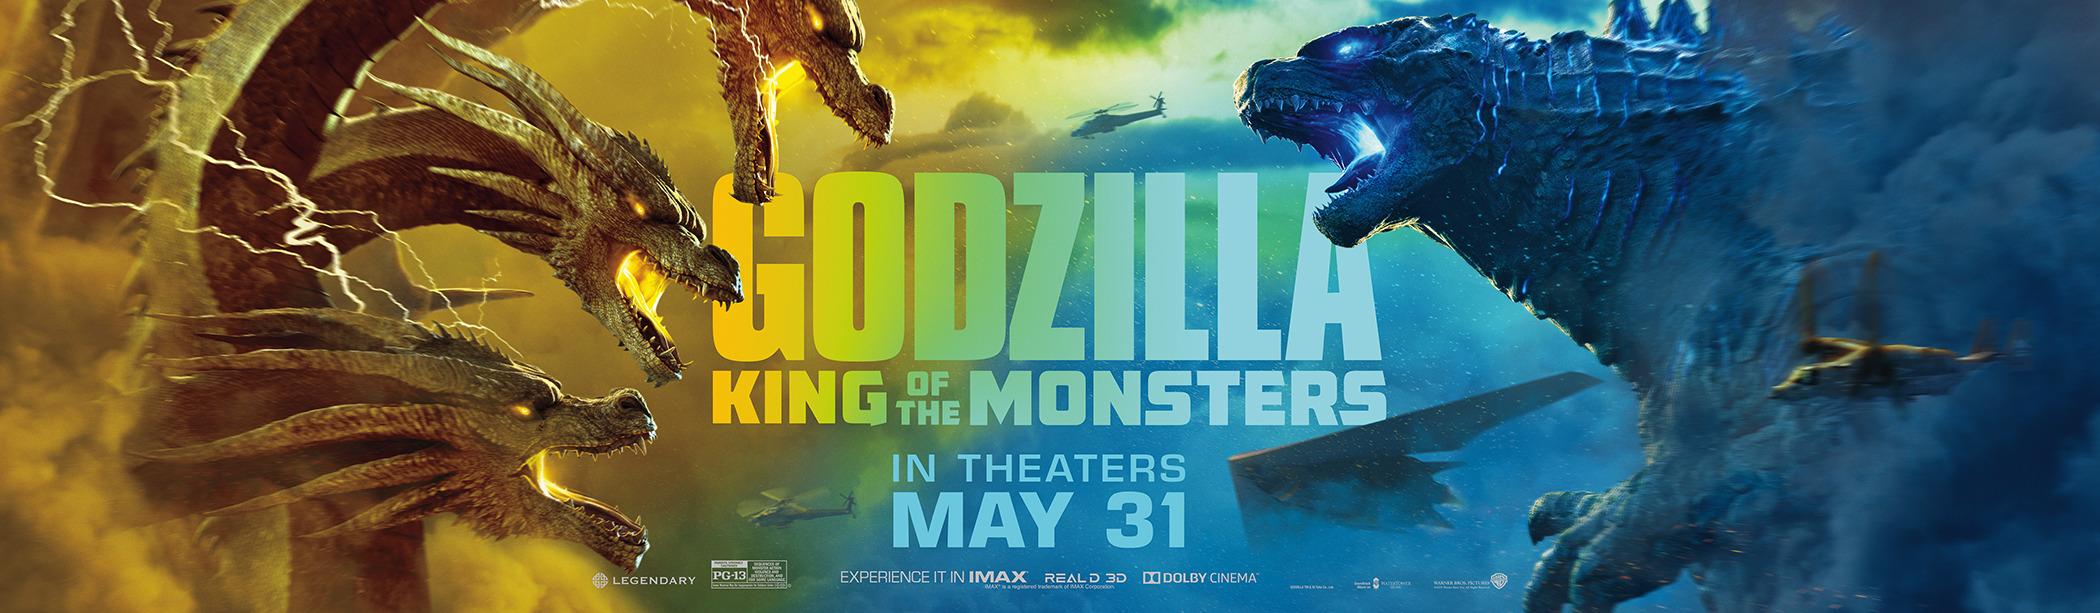 Постер фильма Годзилла 2: Король монстров | Godzilla: King of the Monsters